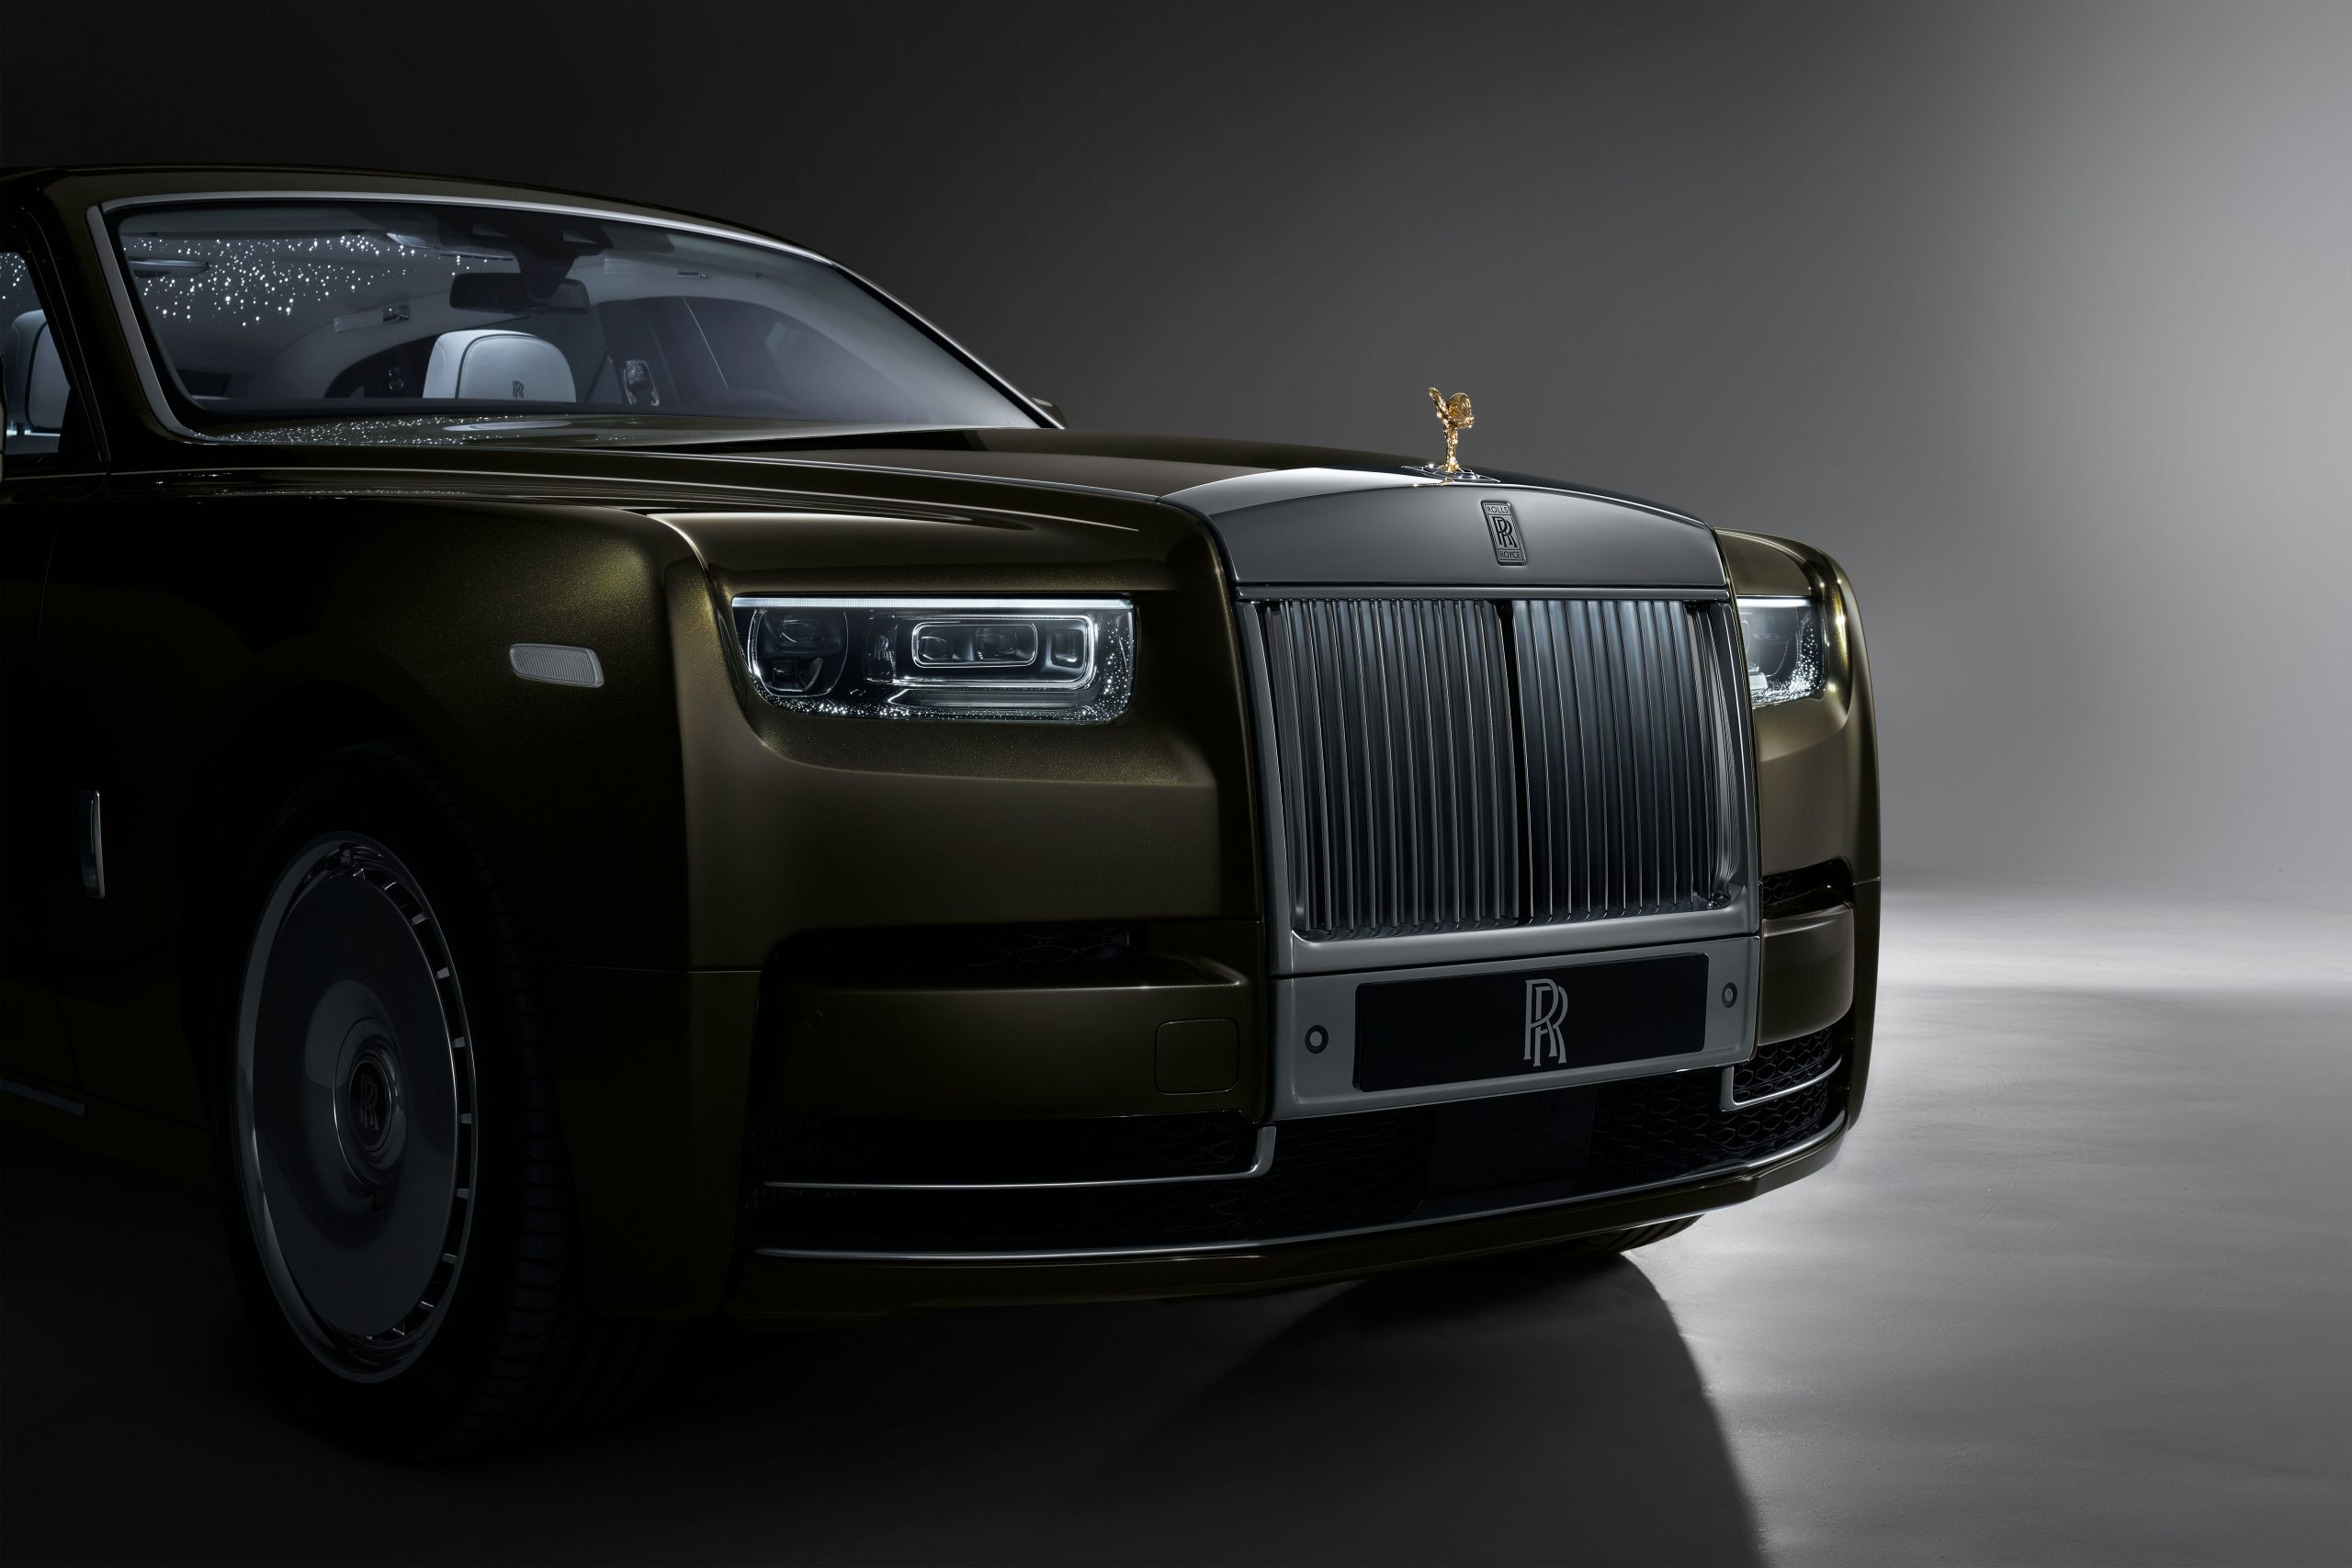 Rolls-Royce Phantom Series II: The Ultimate Luxury Car